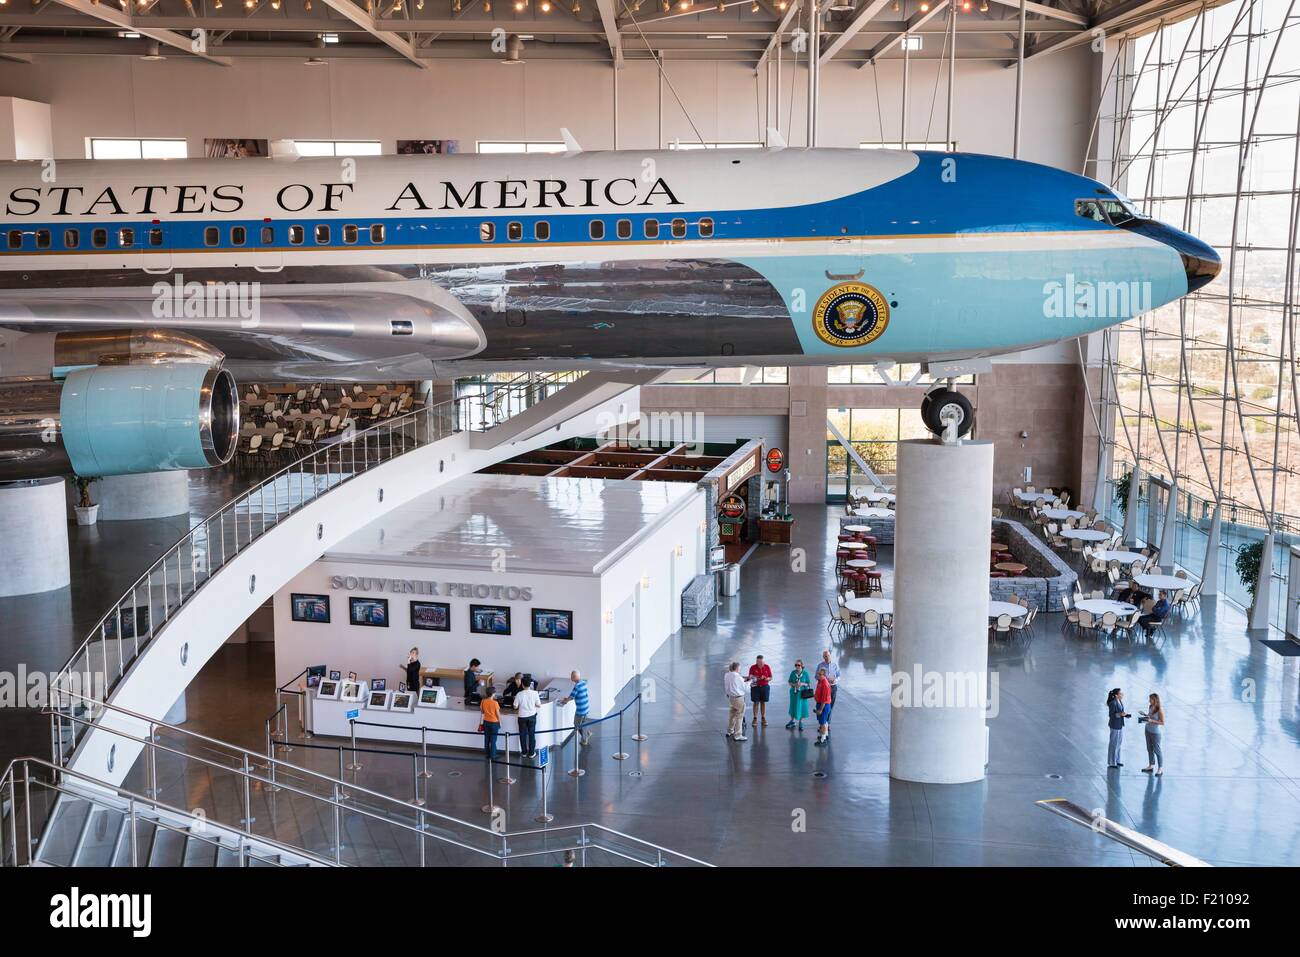 United States, California, Simi Valley, la Ronald Reagan Presidential Library and museum, exposition mettant en vedette le Boeing 707 Airforce un utilisé par les présidents américains de 1973 à 2001 Banque D'Images